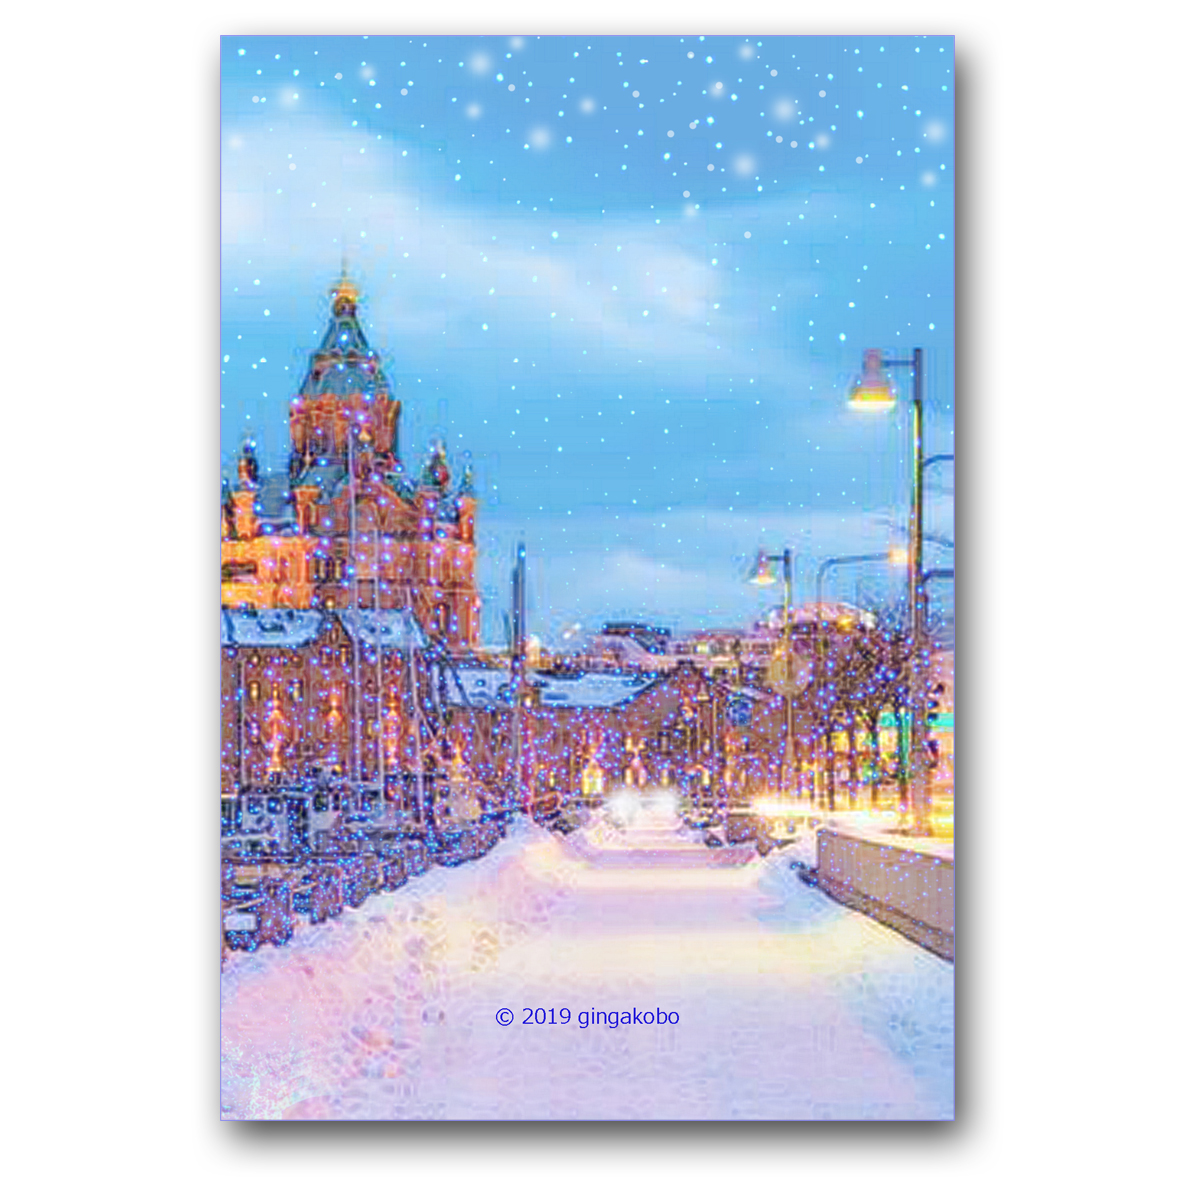 雪降る街にて ほっこり癒しのイラストポストカード2枚組 No 924 Iichi ハンドメイド クラフト作品 手仕事品の通販